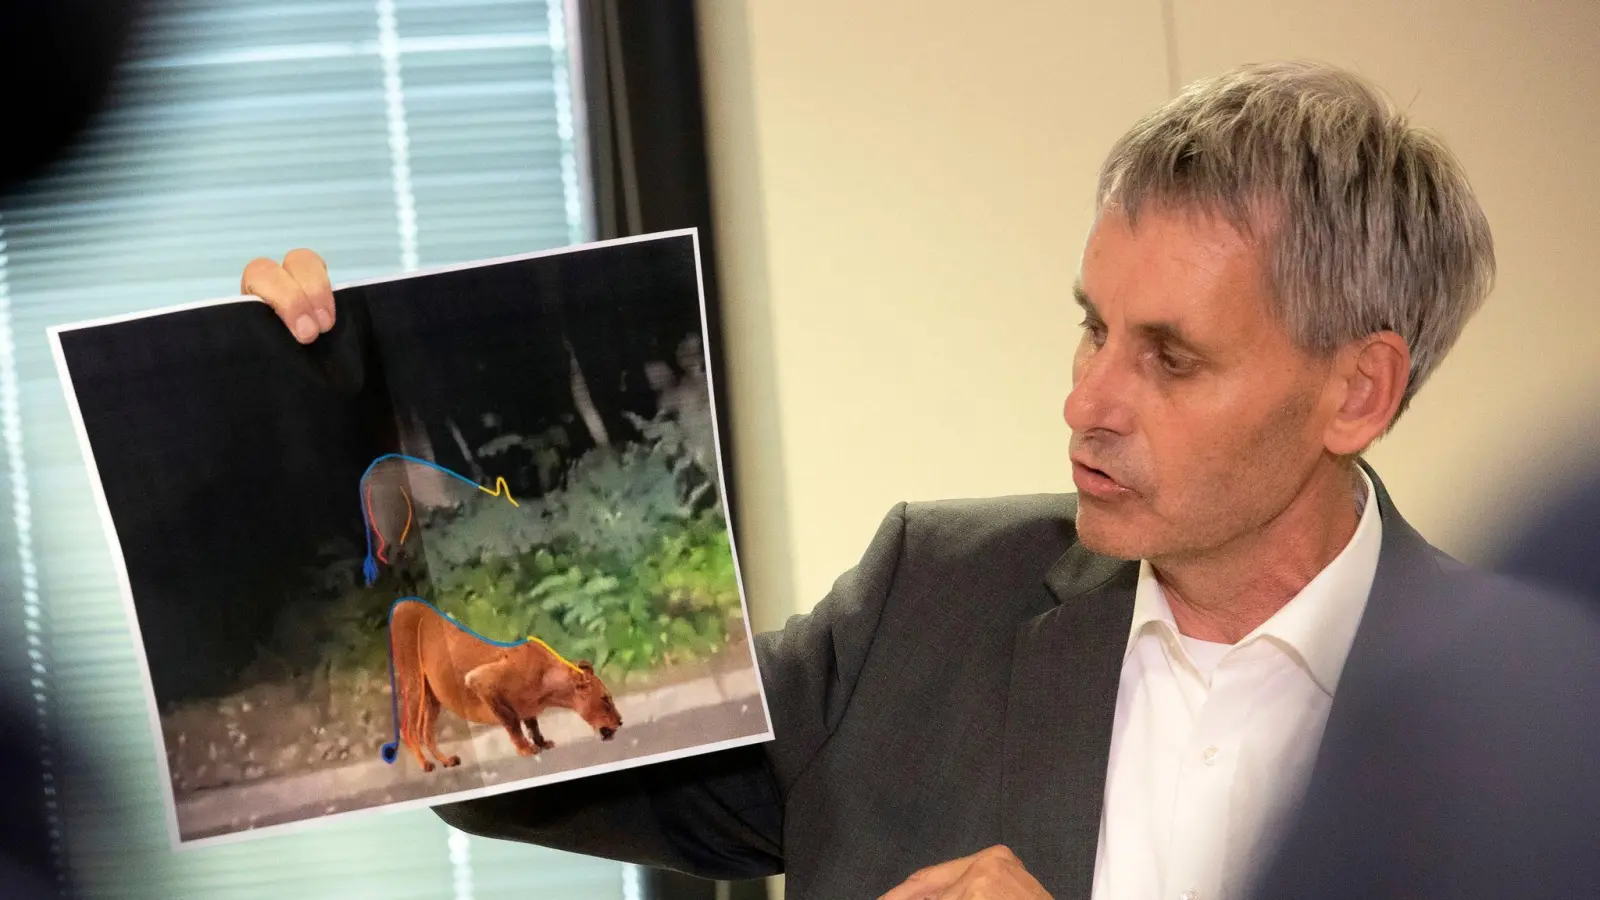 Kleinmachnow-Bürgermeister Michael Grubert erklärt anhand von Fotos, weshalb es sich bei dem gesuchten Raubtier um keine Löwin handelt. (Foto: Paul Zinken/dpa)